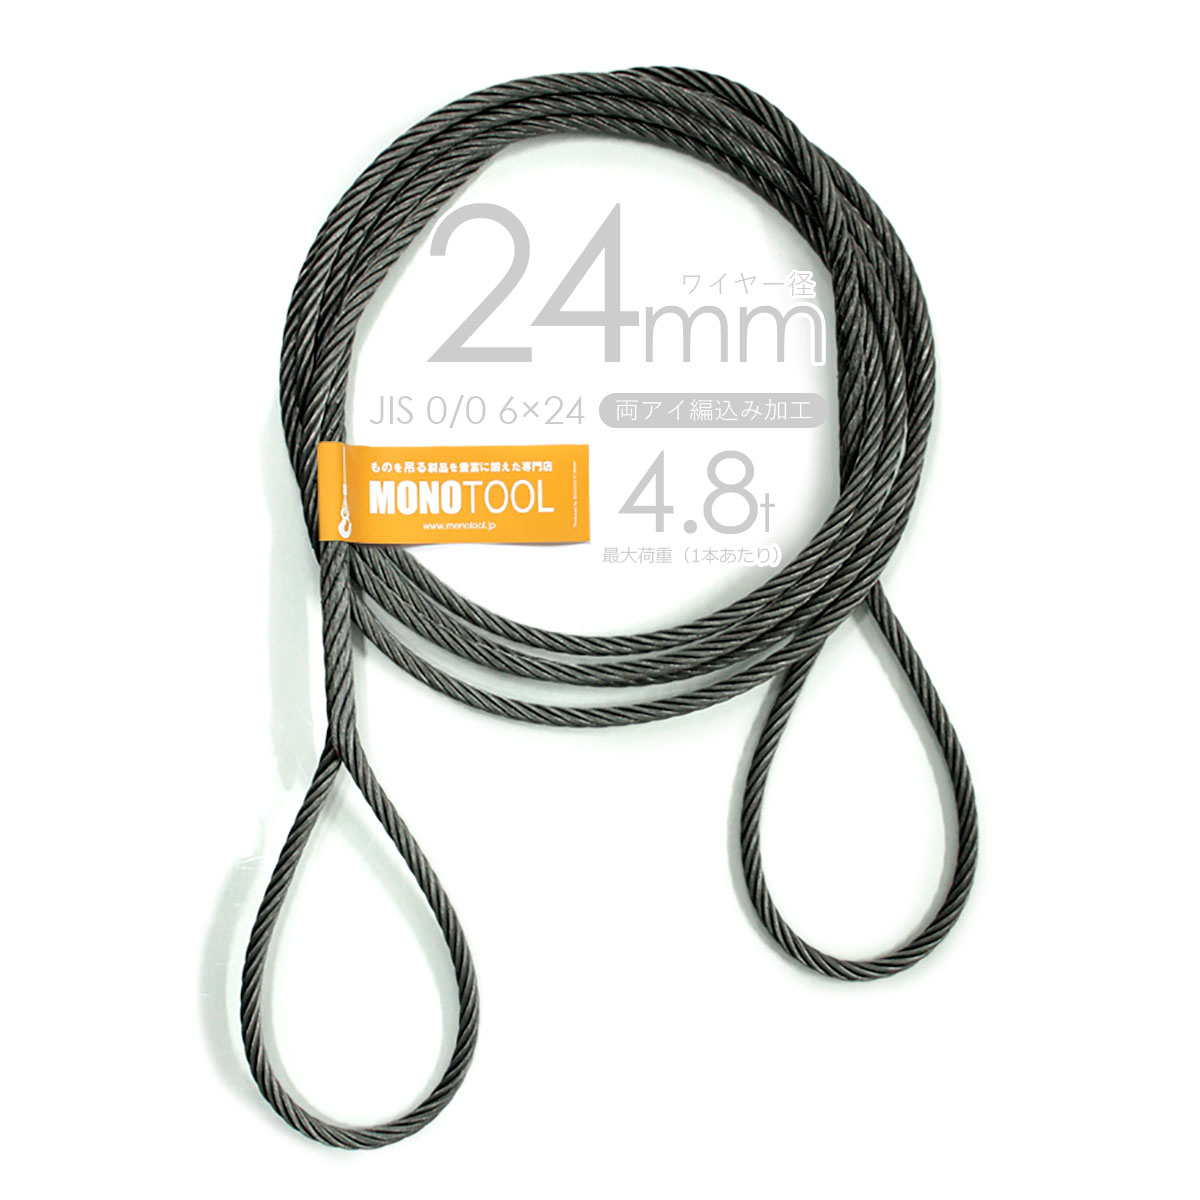 編み込み・フレミッシュ加工 JIS黒(O/O) 24mm(8分) 玉掛ワイヤロープ 2 